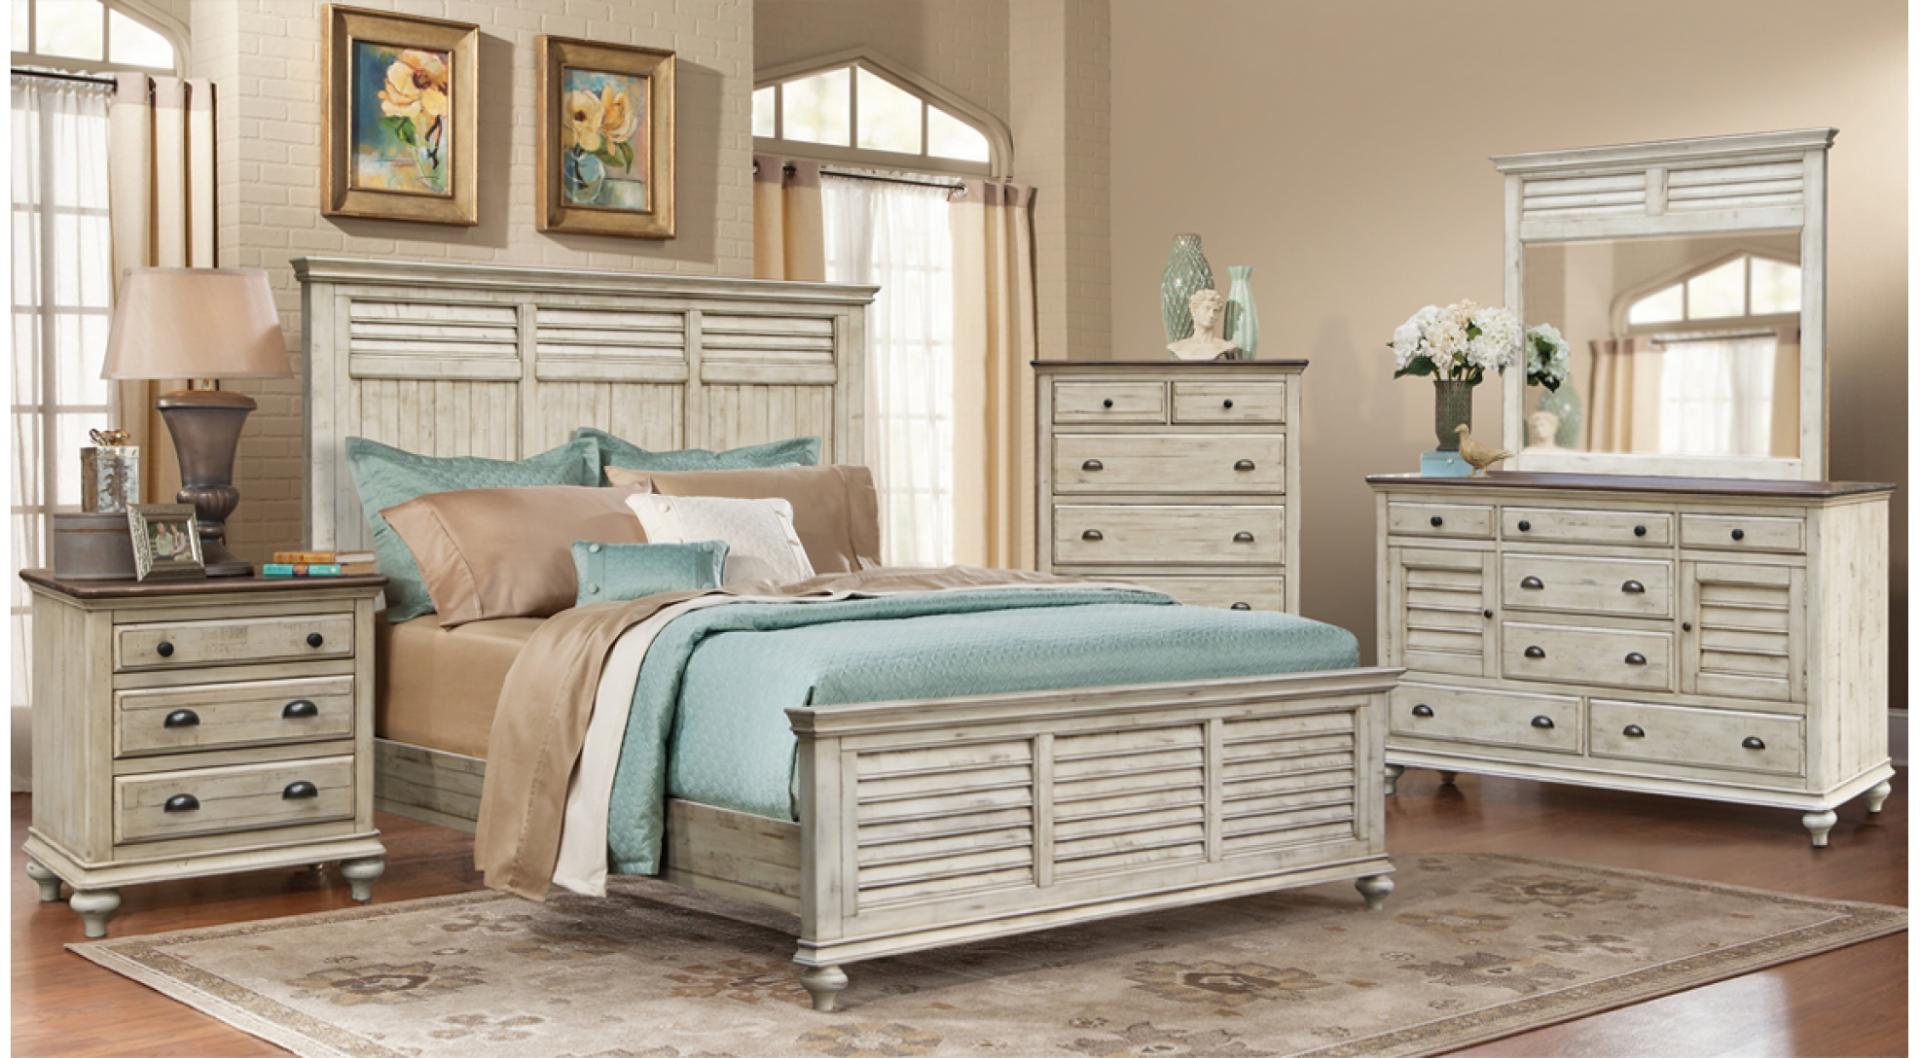 bedroom furniture wholesalers melbourne